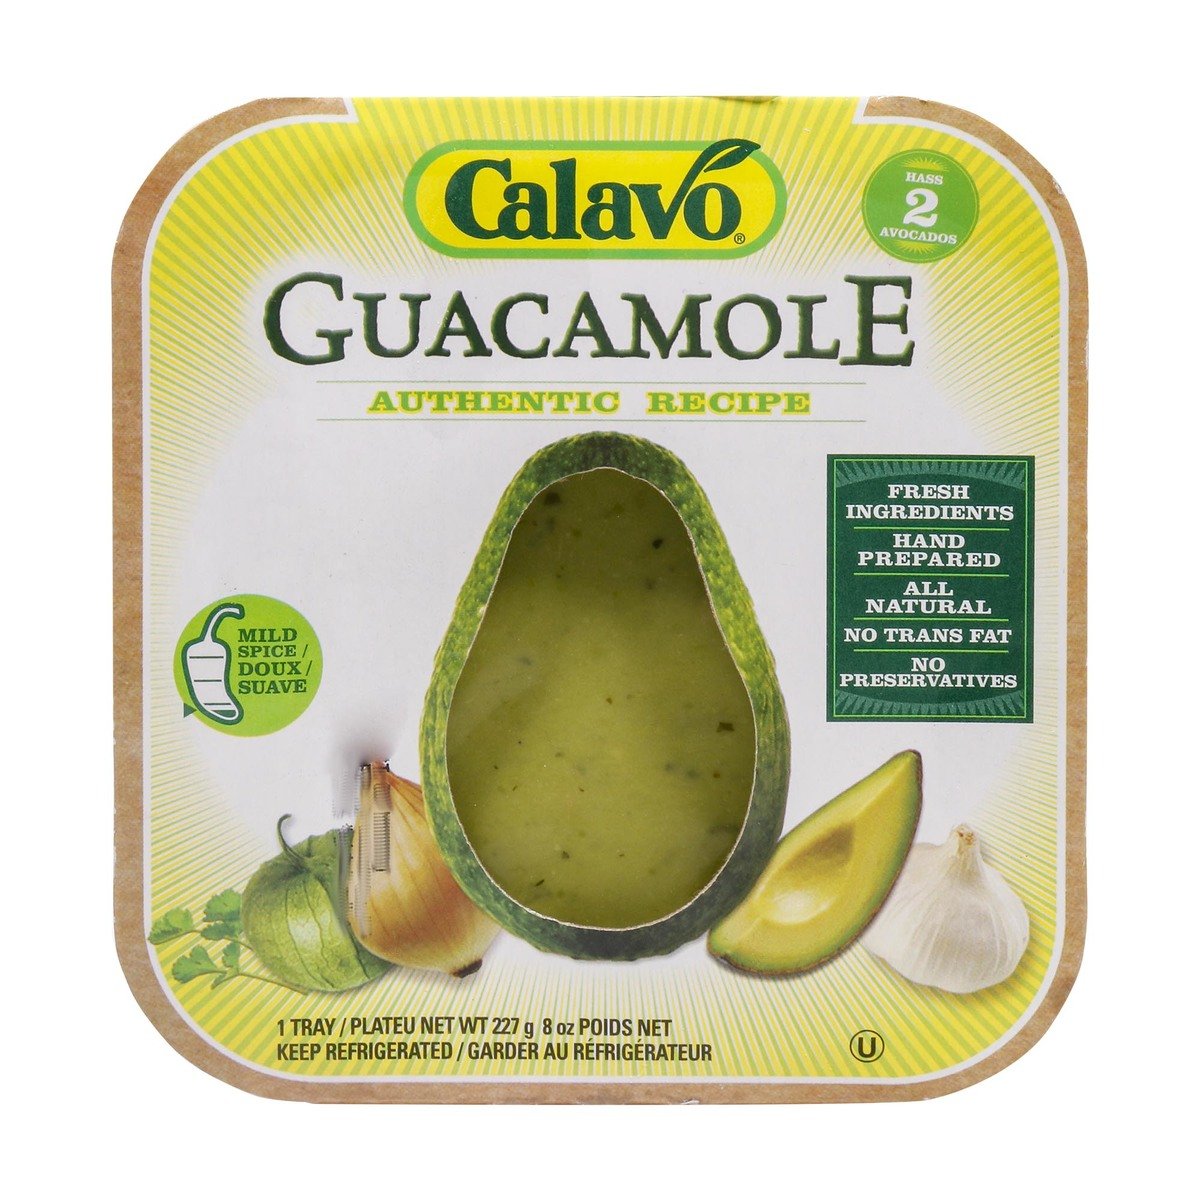 Calavo Guacamole Authentic Recipe 227g